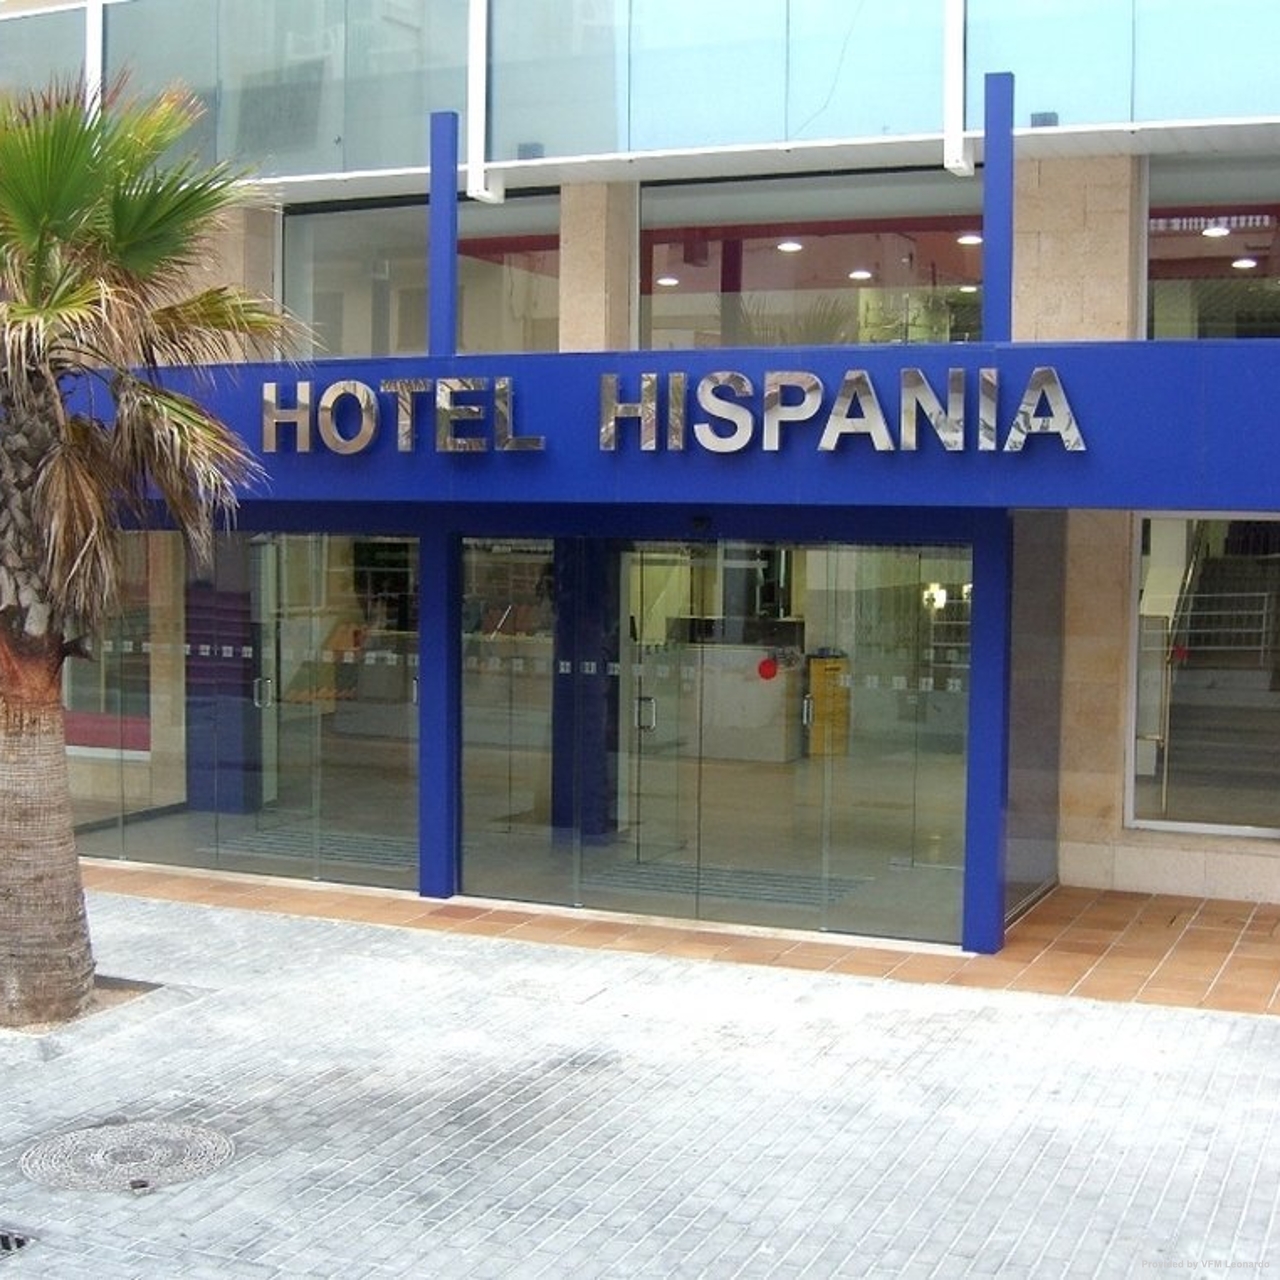 Hotel Hispania - 4 HRS star hotel in Palma de Mallorca (Balearic Islands)